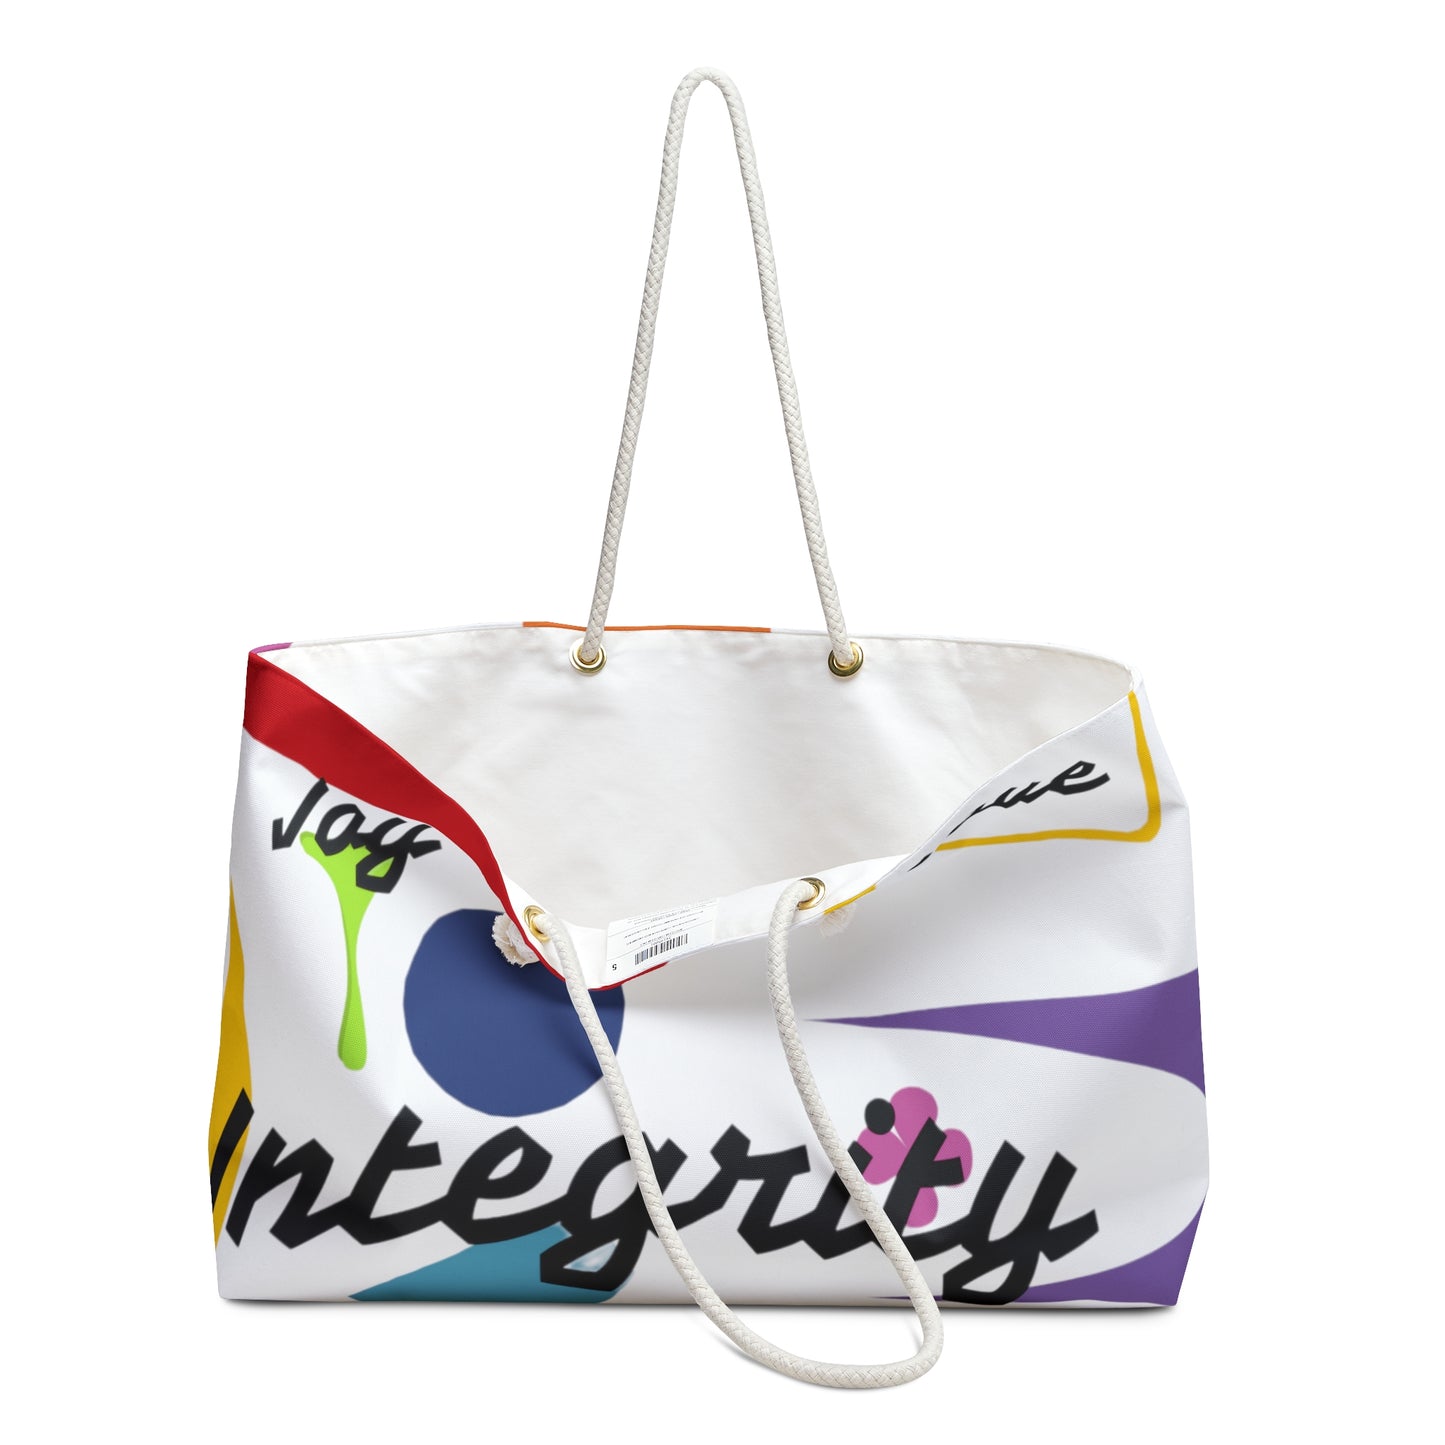 Integrity Love Joy Weekender Bag (white)